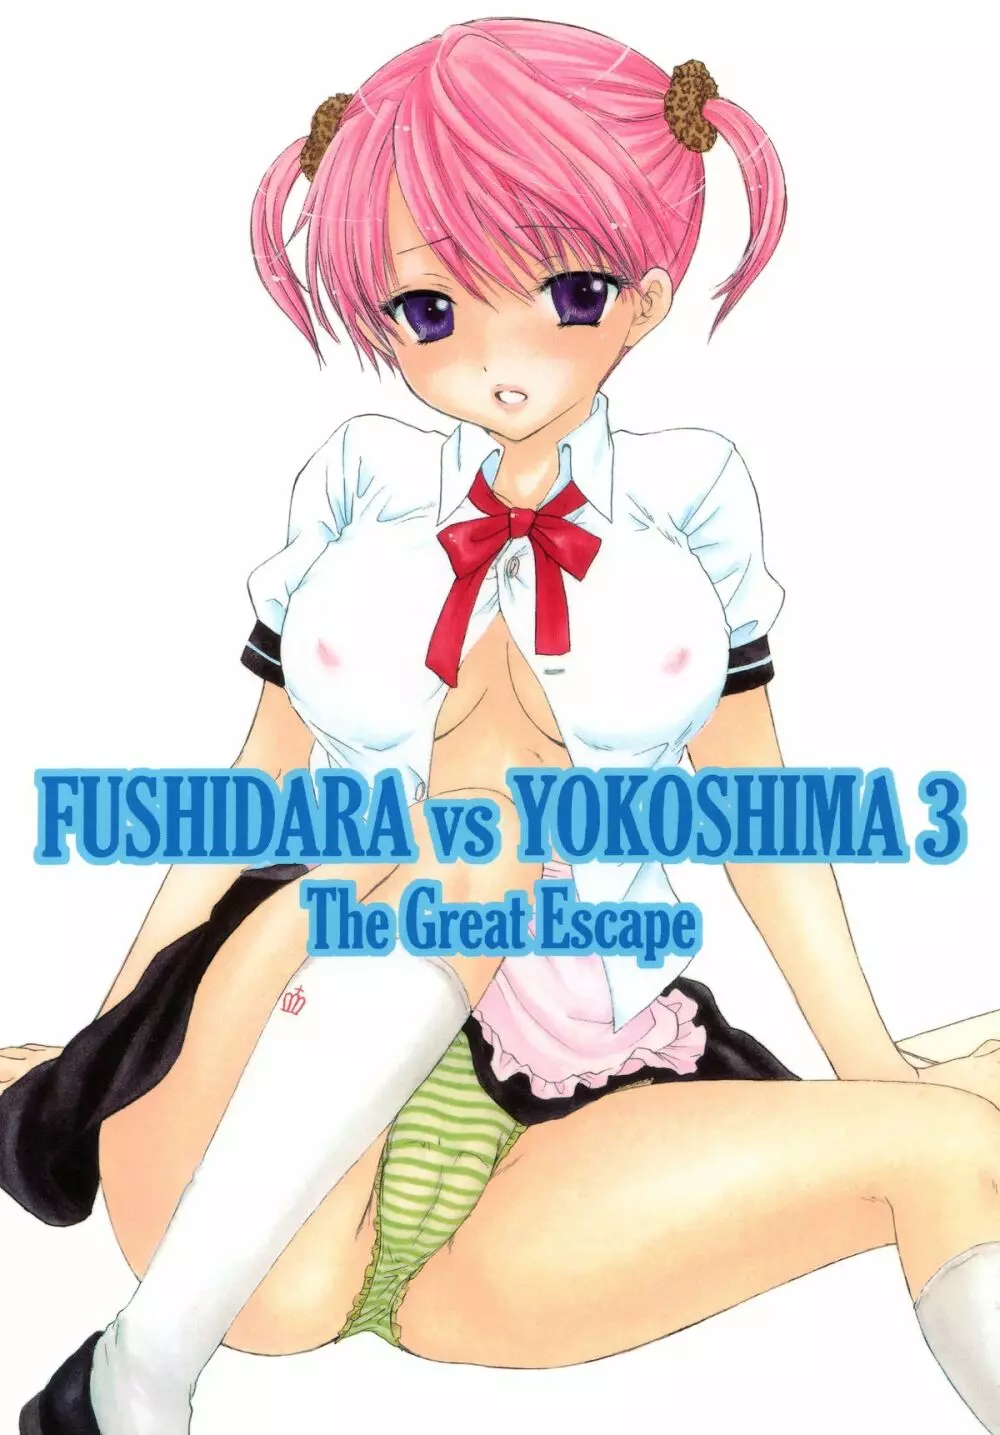 FUSHIDARA vs YOKOSHIMA 3